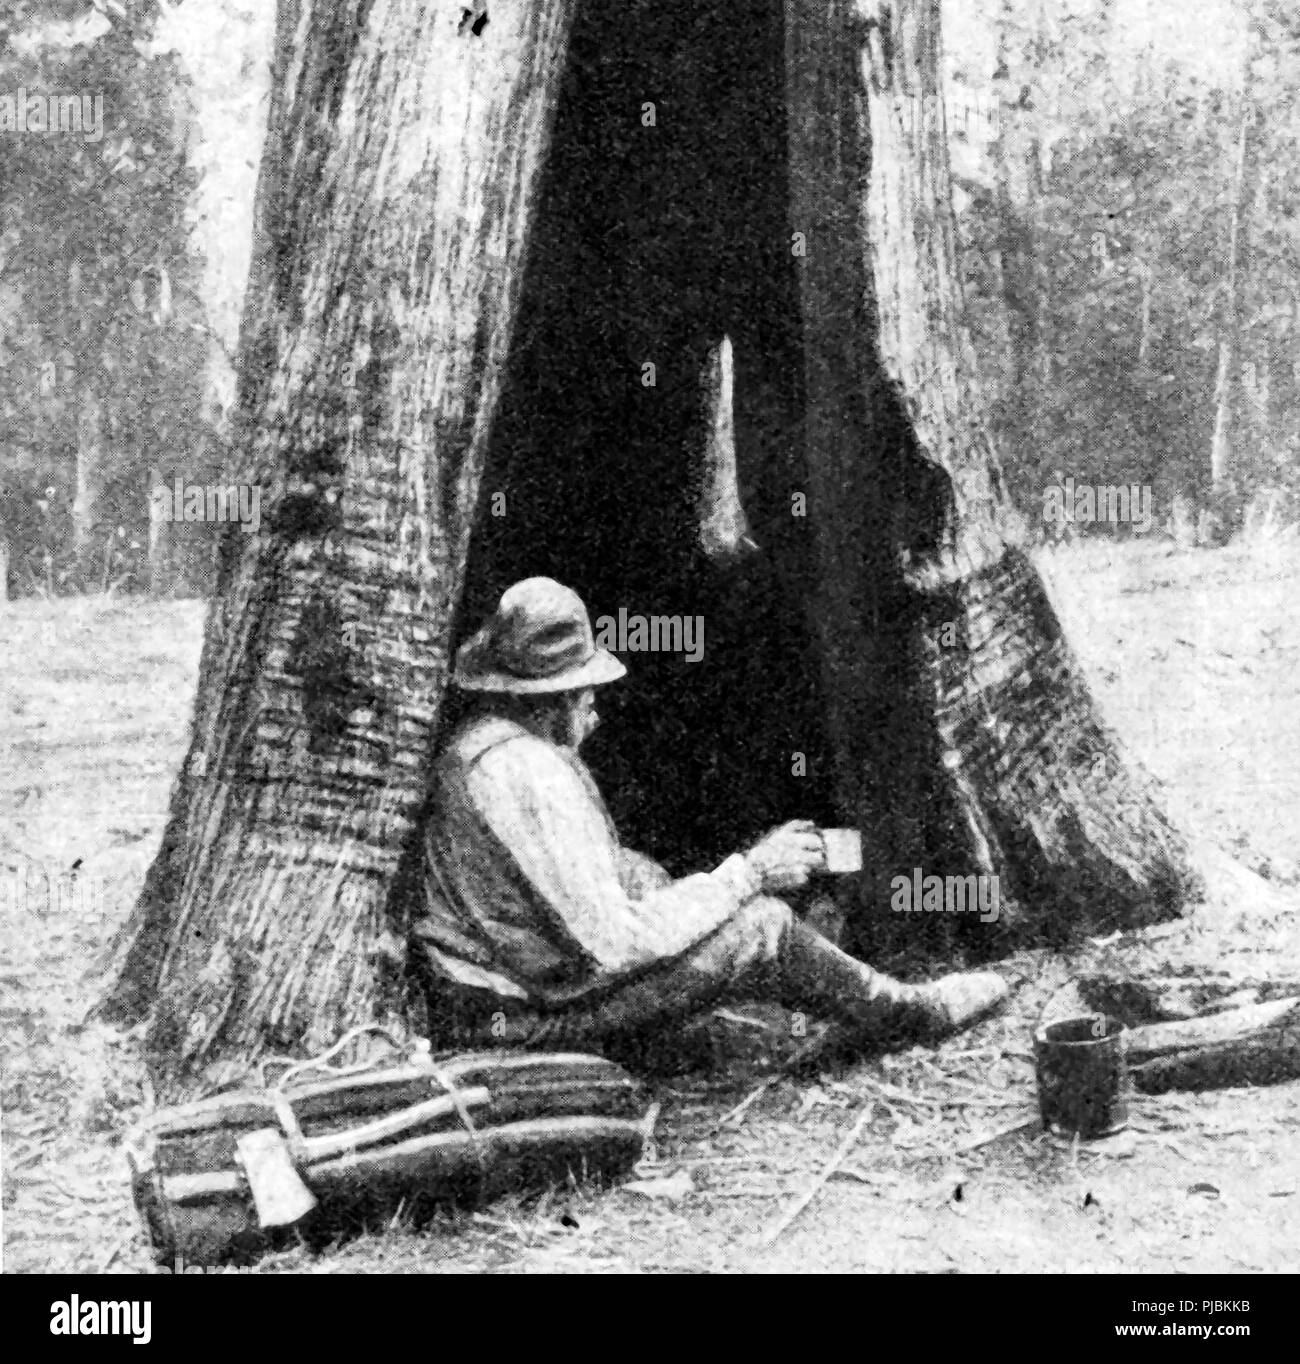 Eine 1920 Bild eines australischen Siedler (Swag-Mann oder Gold Miner) leben in einem behelfsmäßigen Hütte aus einem hohlen Baumstamm gemacht Stockfoto